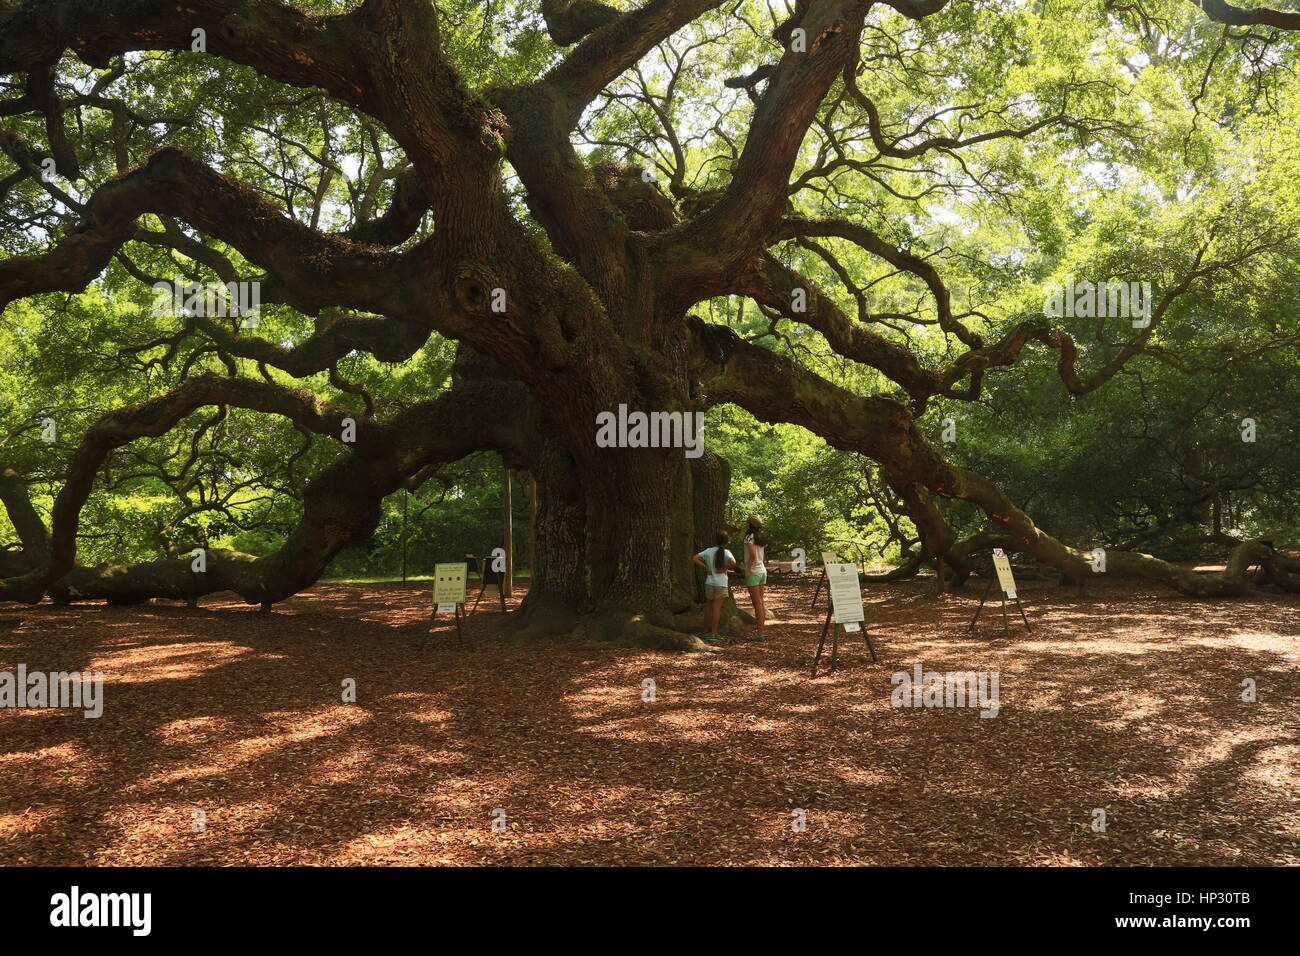 Historischen Angel Oak Tree auf James Island, South Carolina. Diese Live-Eiche hat enorme Niederlassungen und ist der älteste Baum östlich des Mississippi River Stockfoto